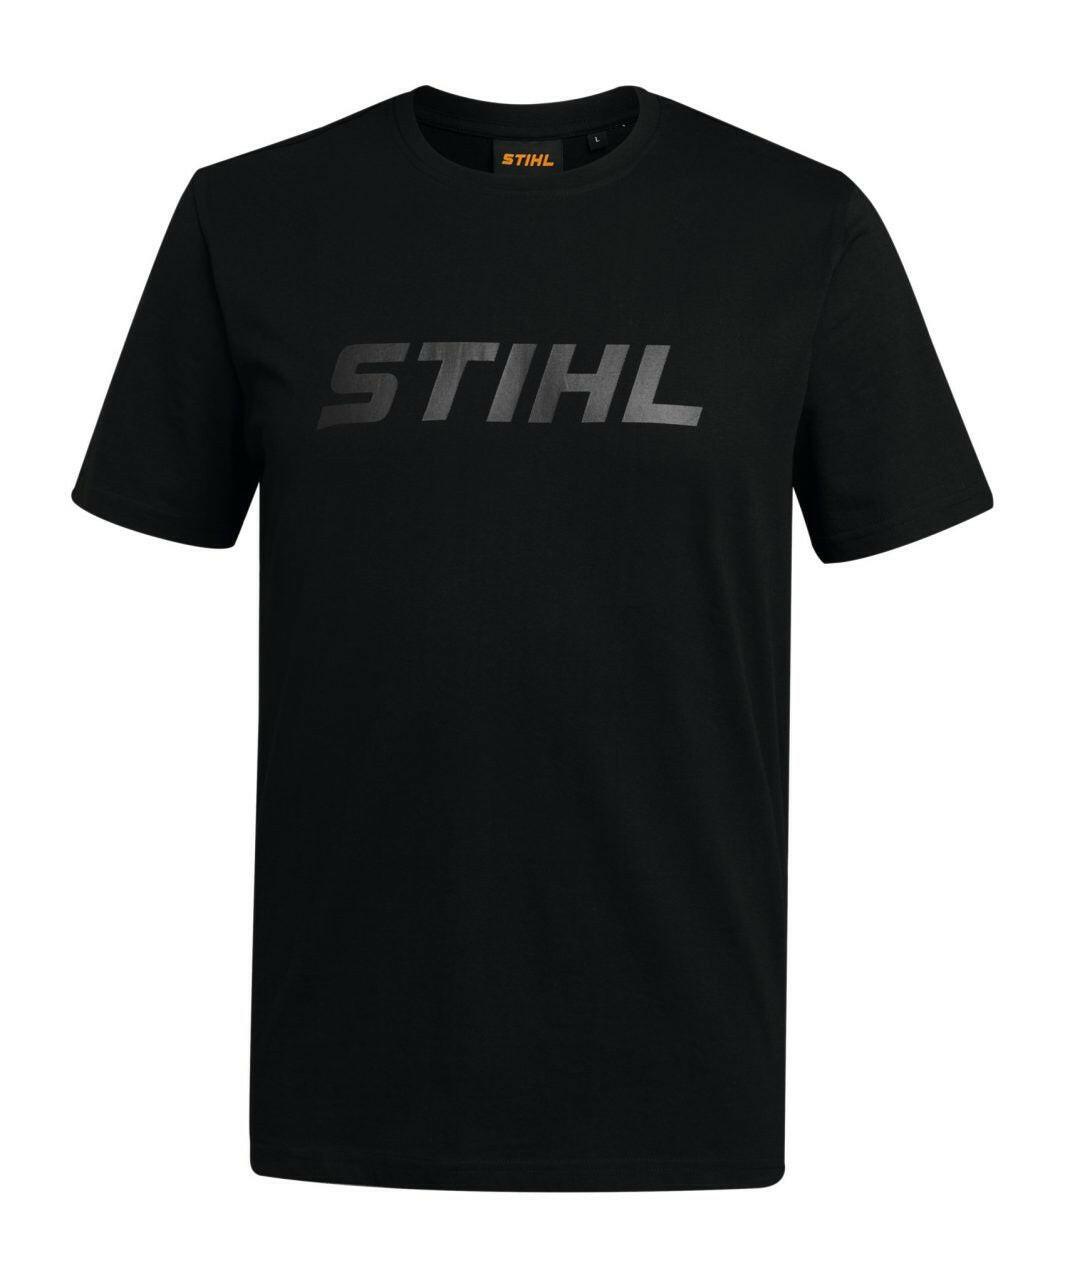 Stihl T-shirt Black Logo